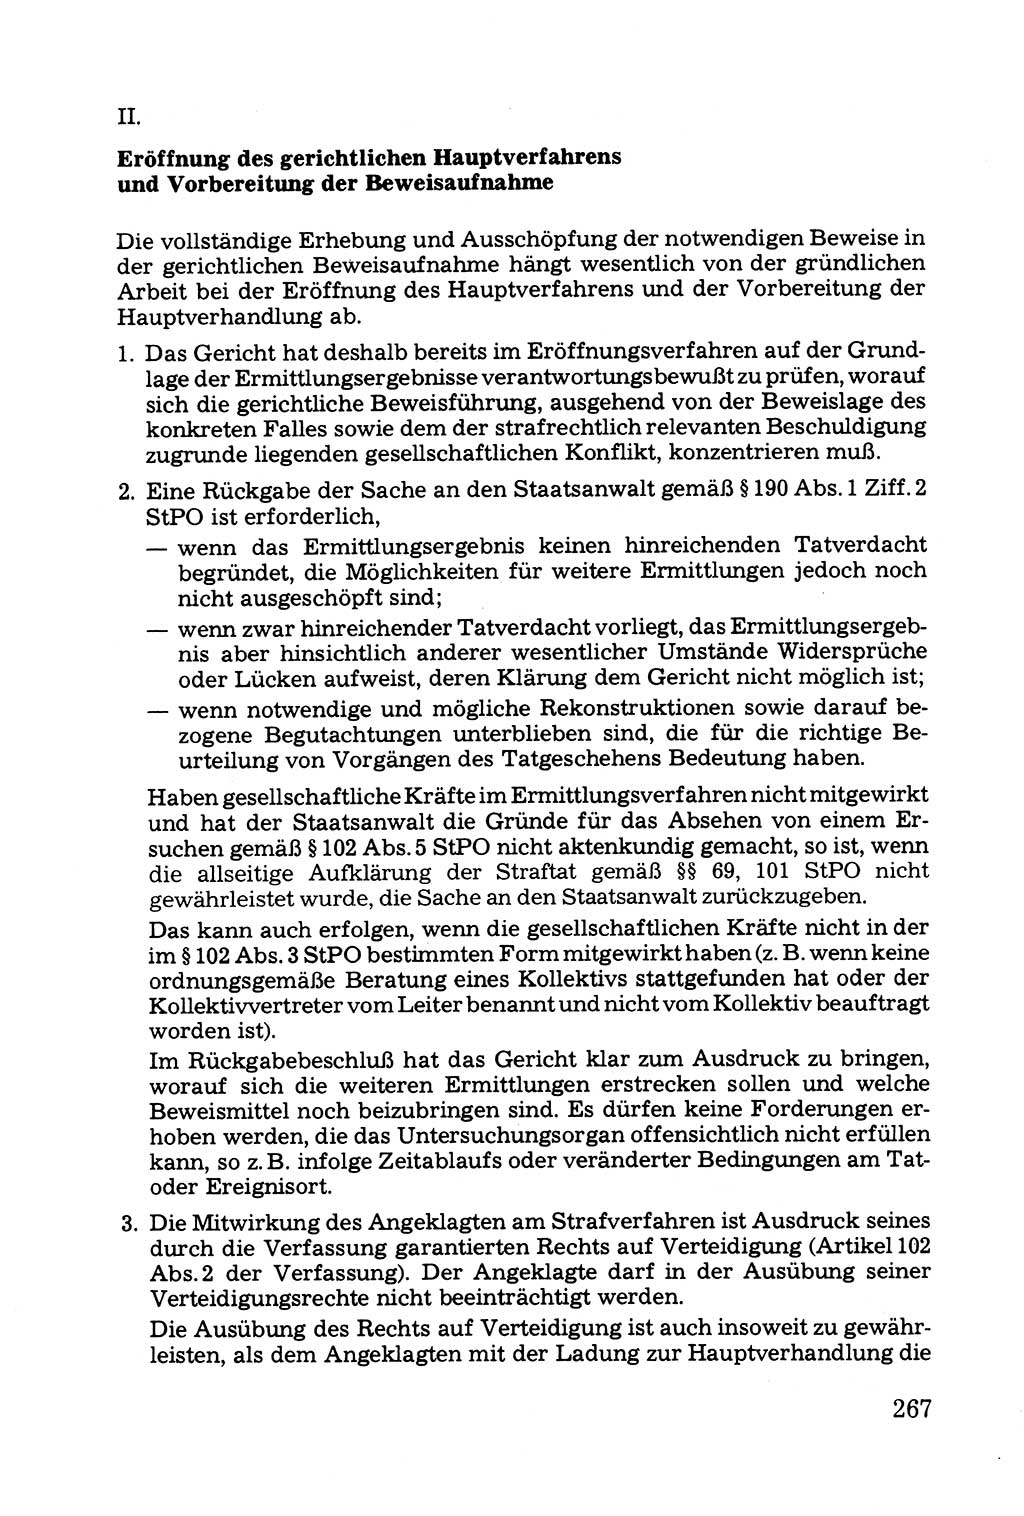 Grundfragen der Beweisführung im Ermittlungsverfahren [Deutsche Demokratische Republik (DDR)] 1980, Seite 267 (Bws.-Fhrg. EV DDR 1980, S. 267)